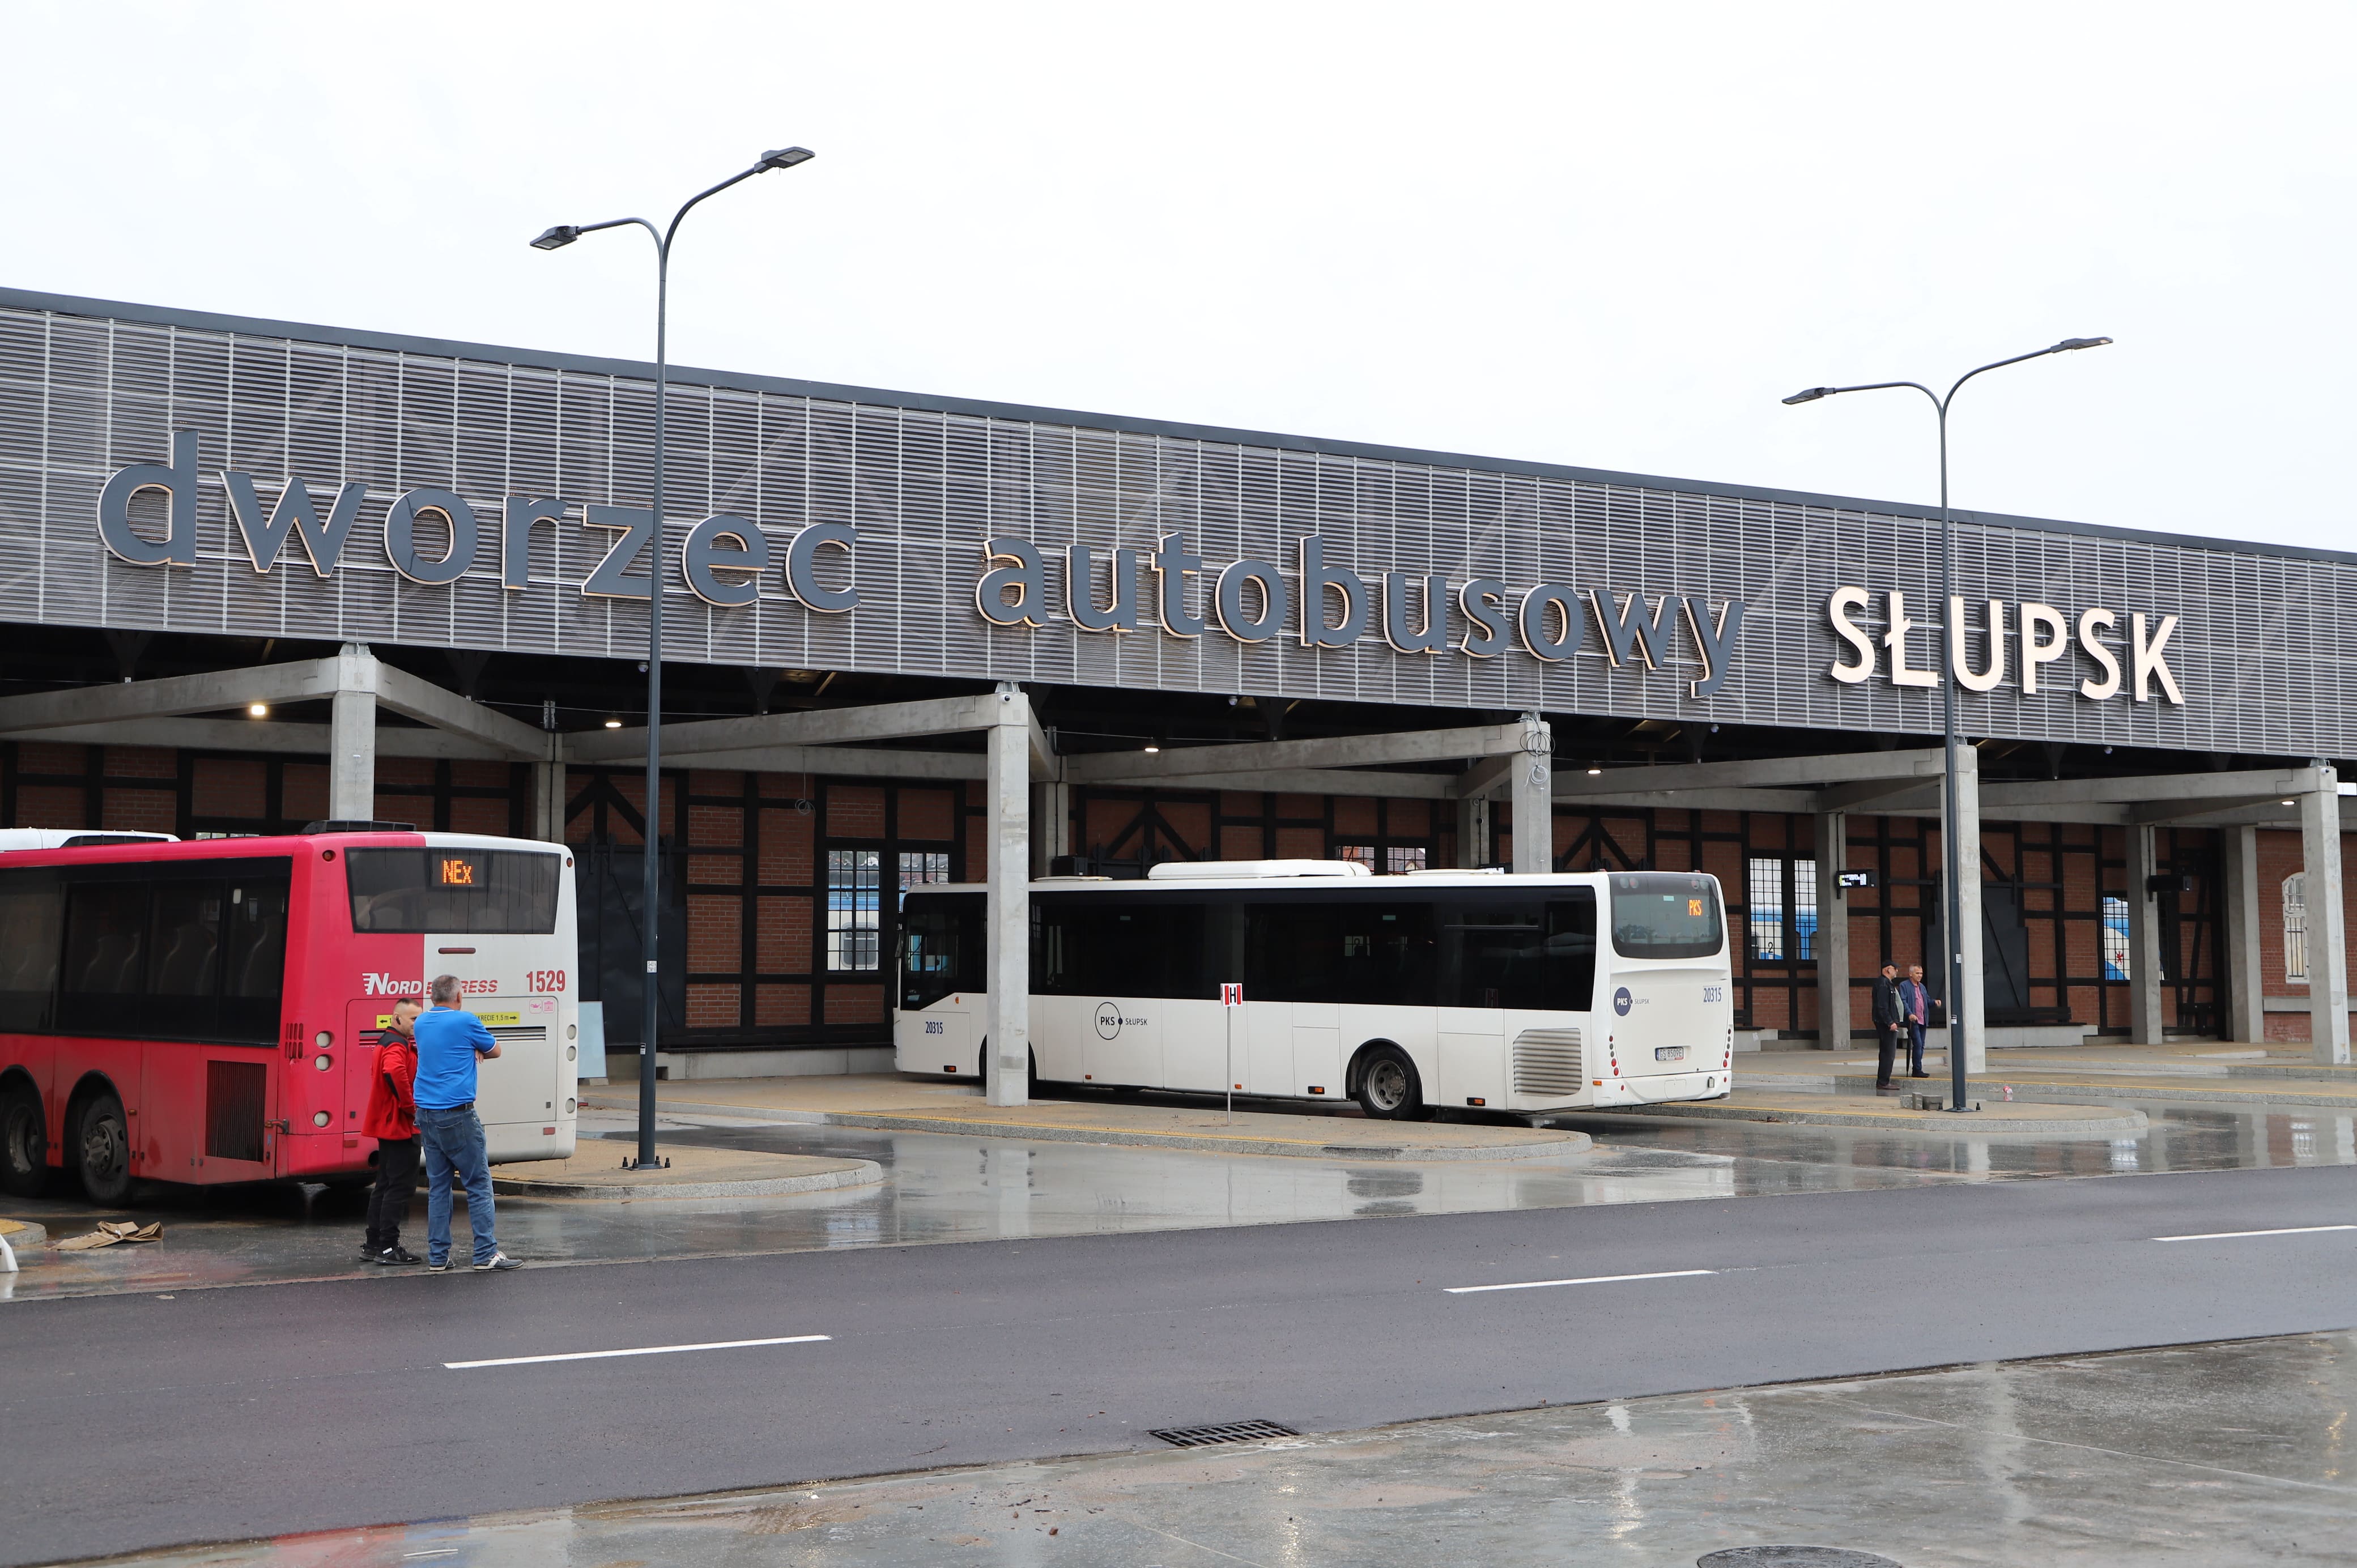 Dworzec autobusowy Słupsk - fasada dworca oraz dwa autobusy na stanowiskach przyjazdu/odjazdu, także 4 ludzi